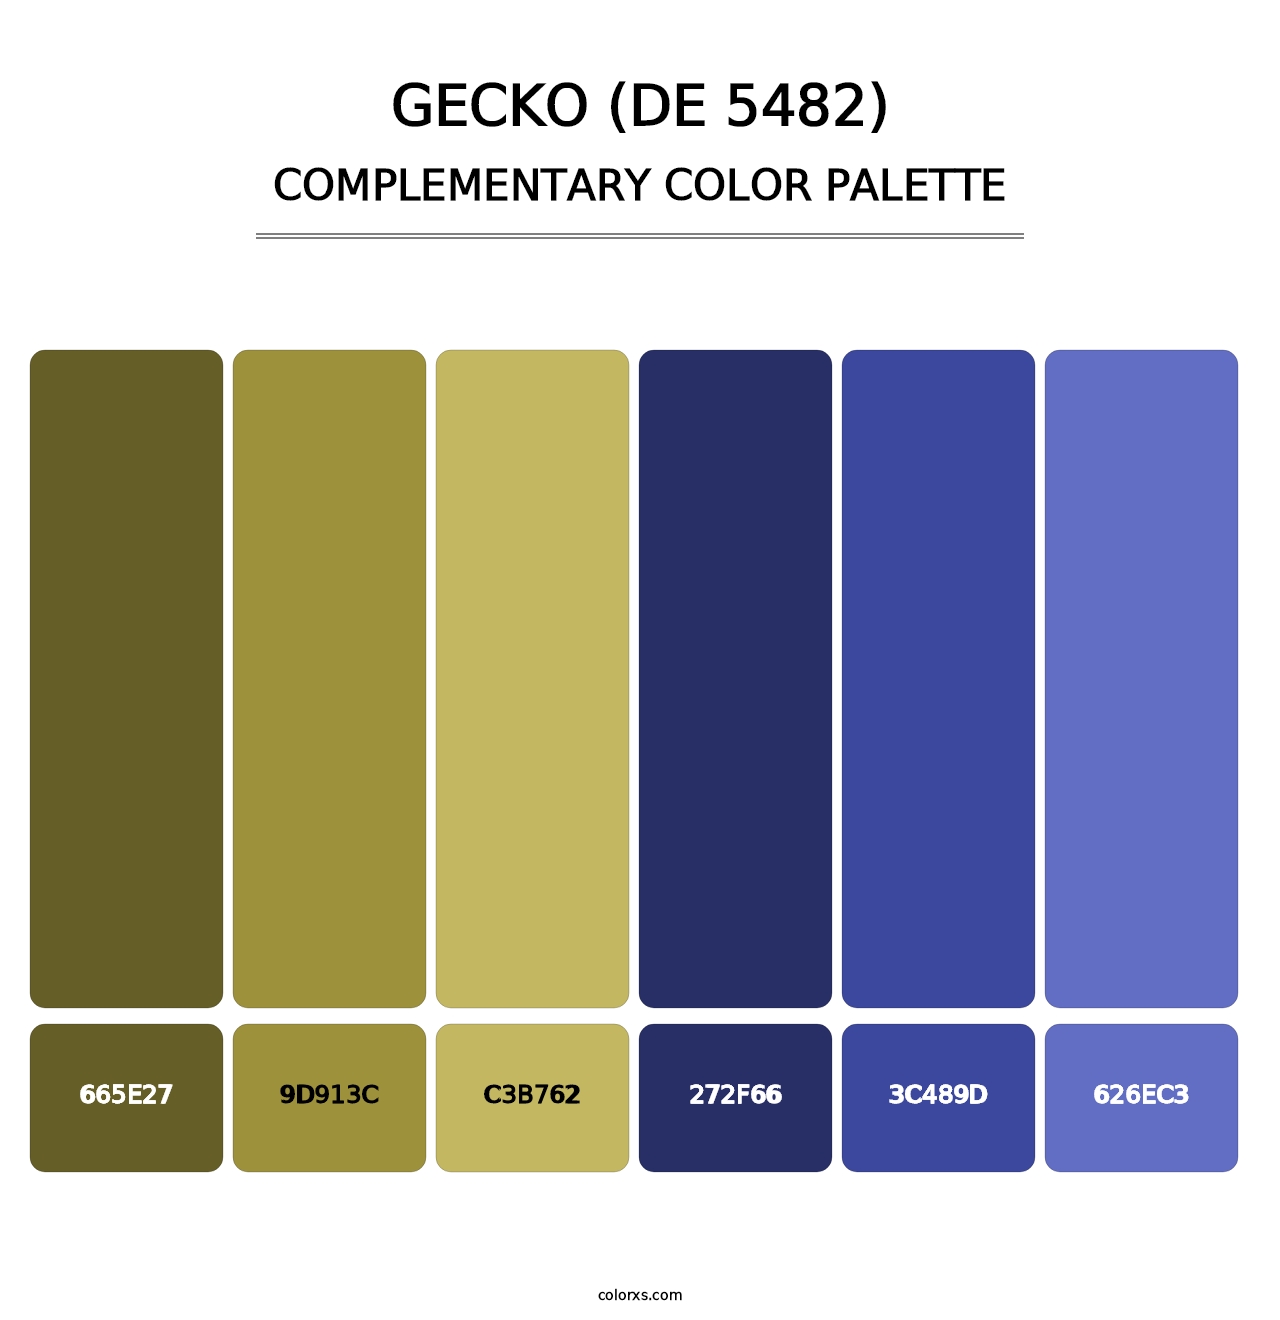 Gecko (DE 5482) - Complementary Color Palette